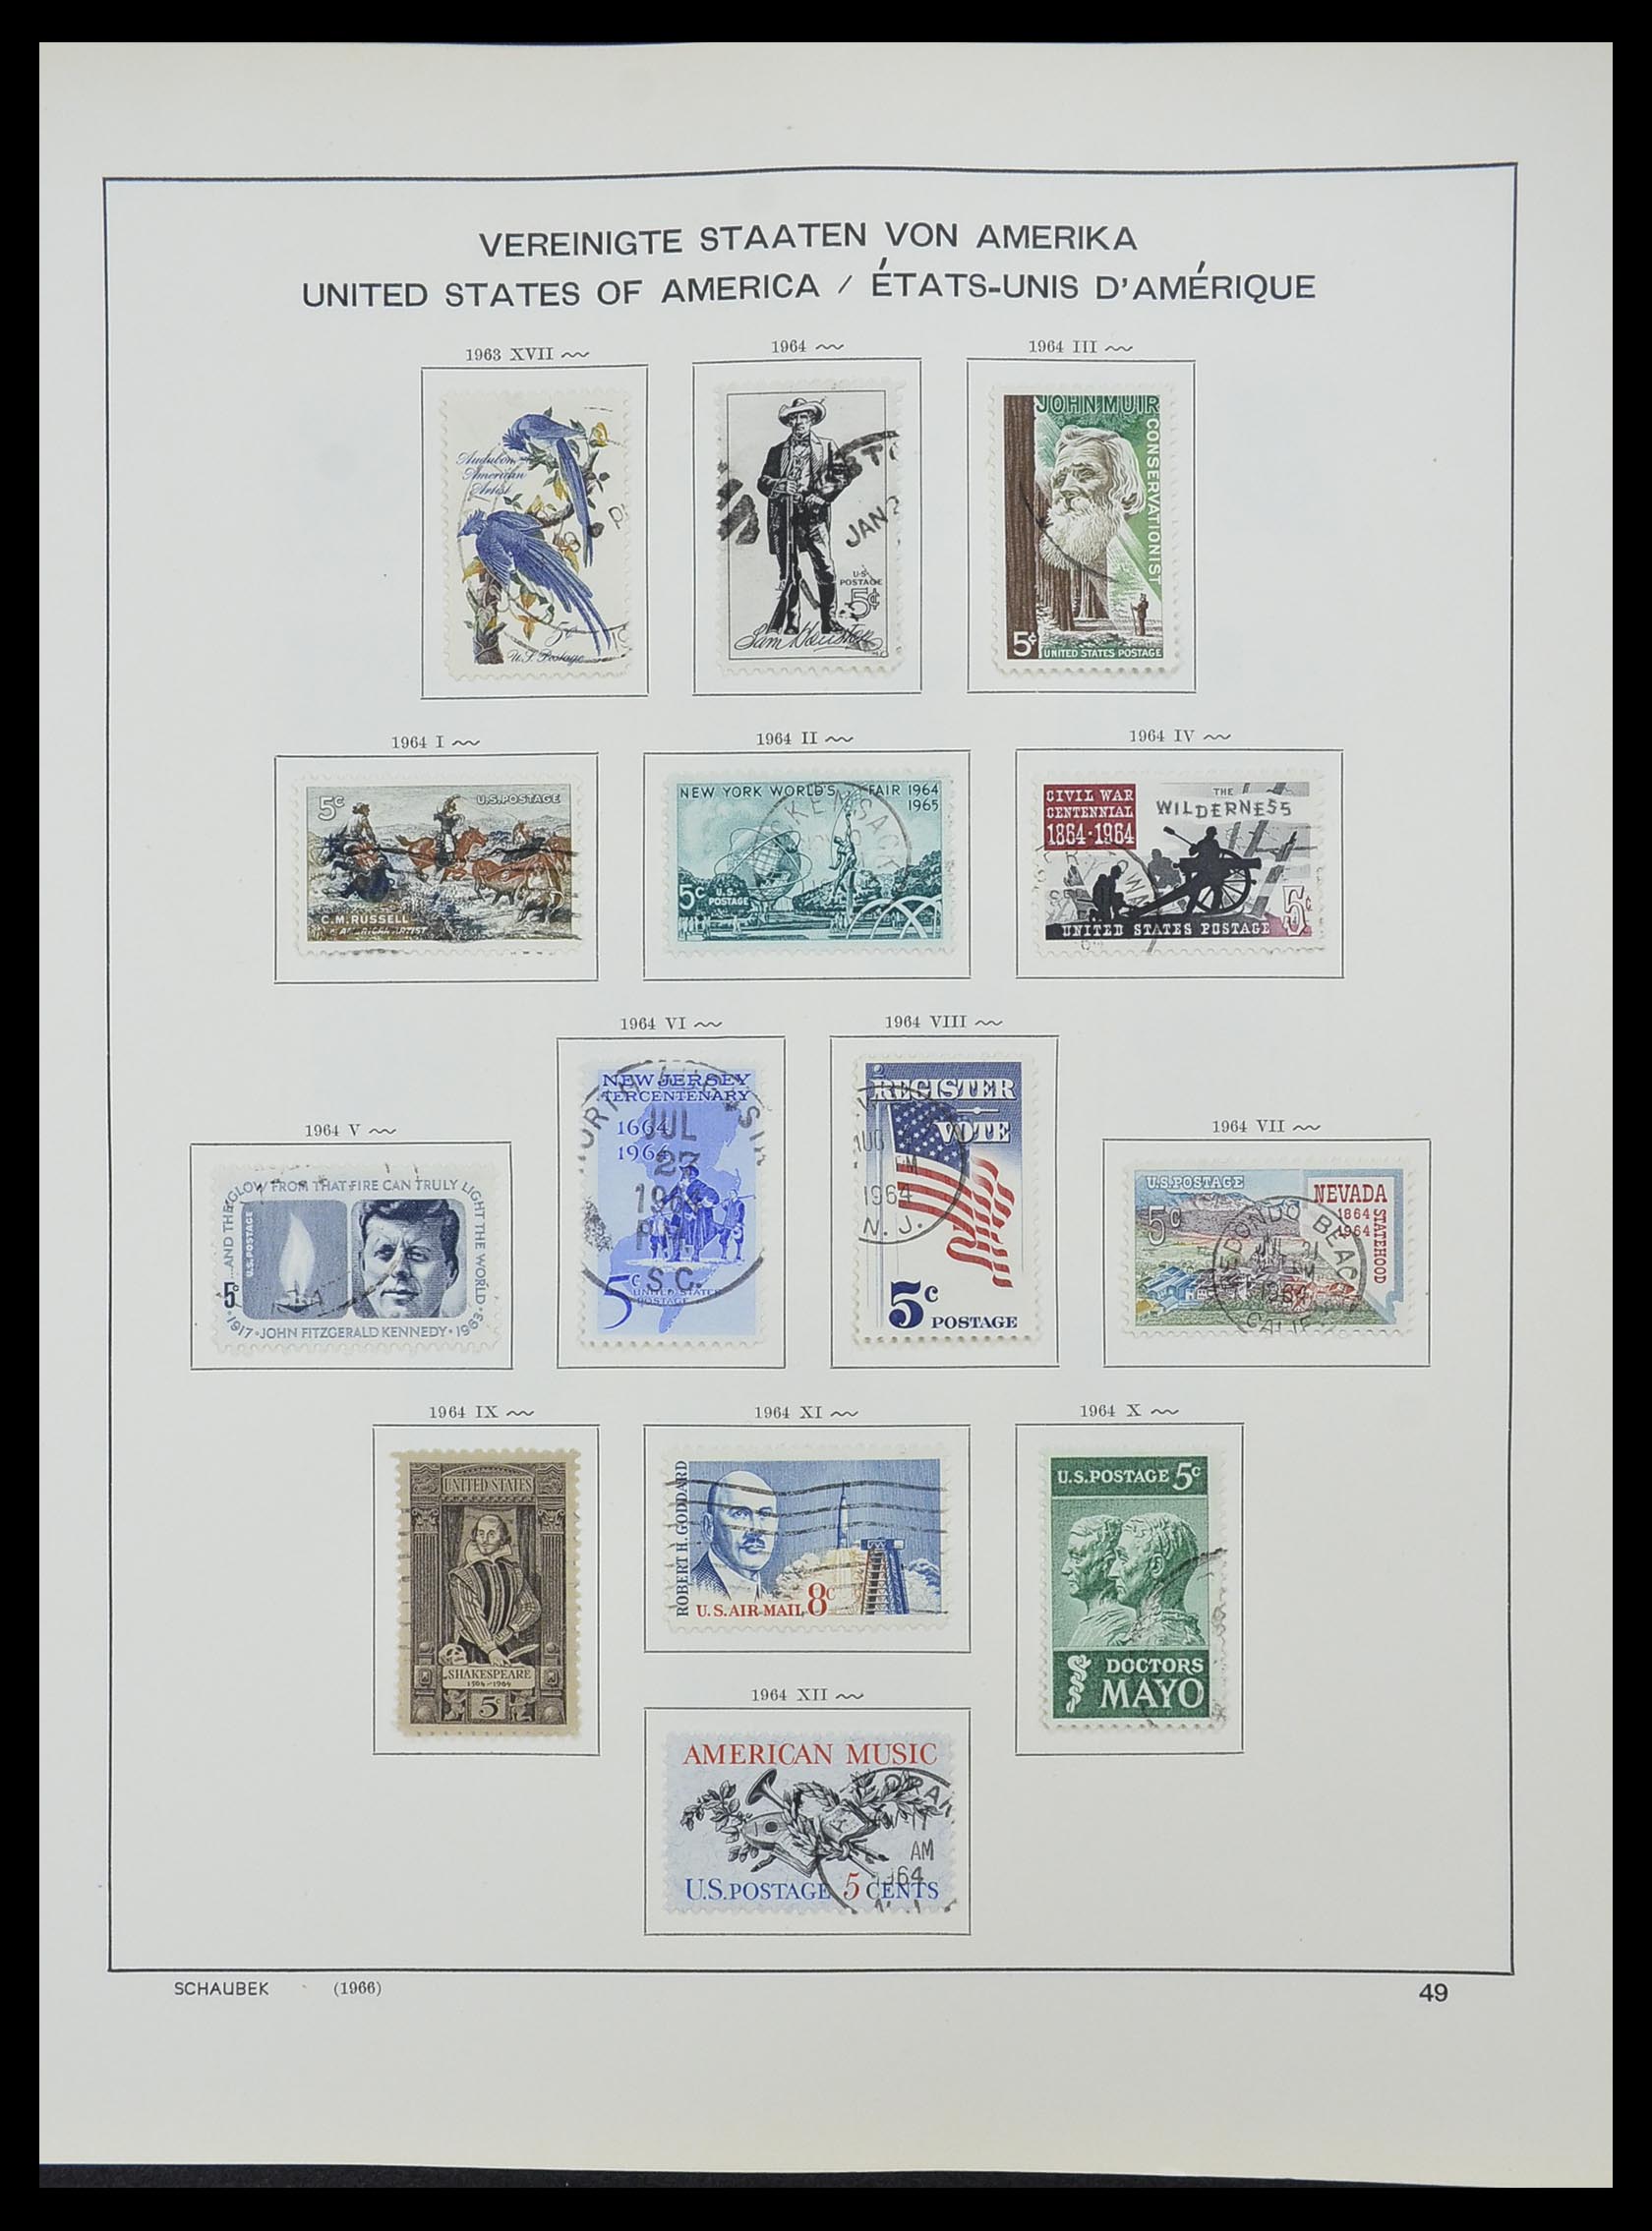 33211 082 - Stamp collection 33211 USA 1847-2010.